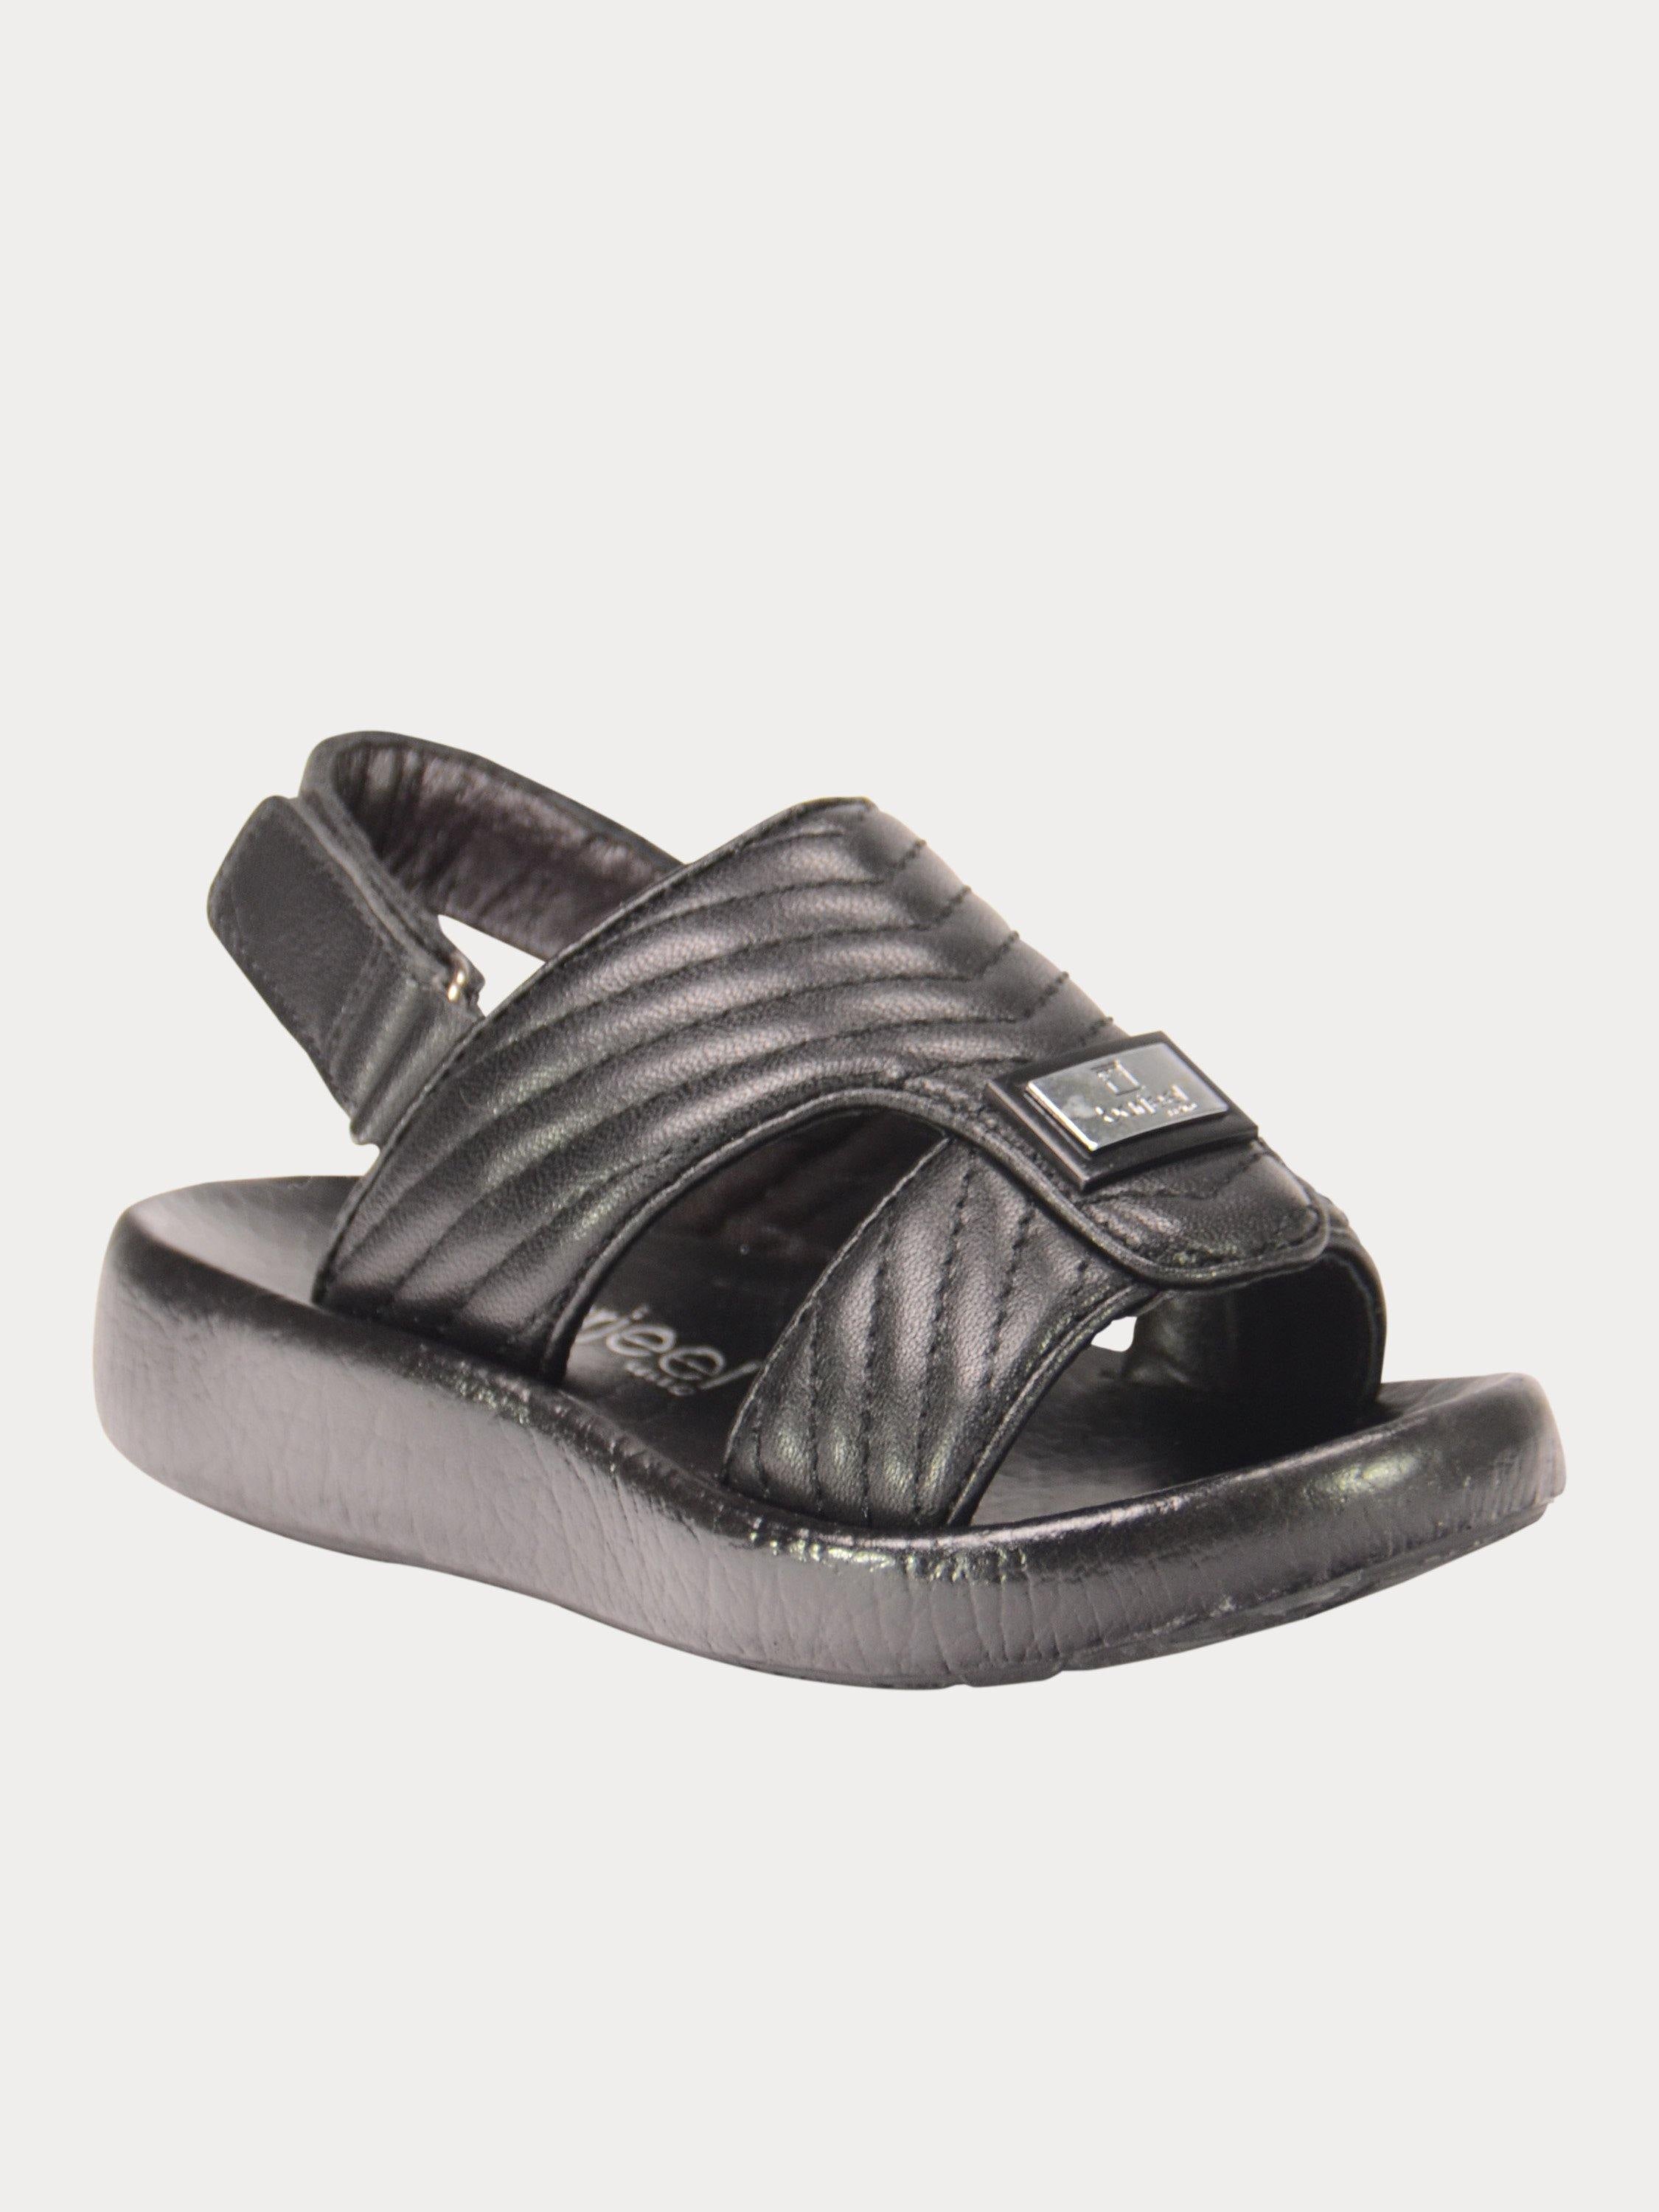 Barjeel Uno 2190660 Nappa Stripes Strap Arabic Leather Sandals #color_Black